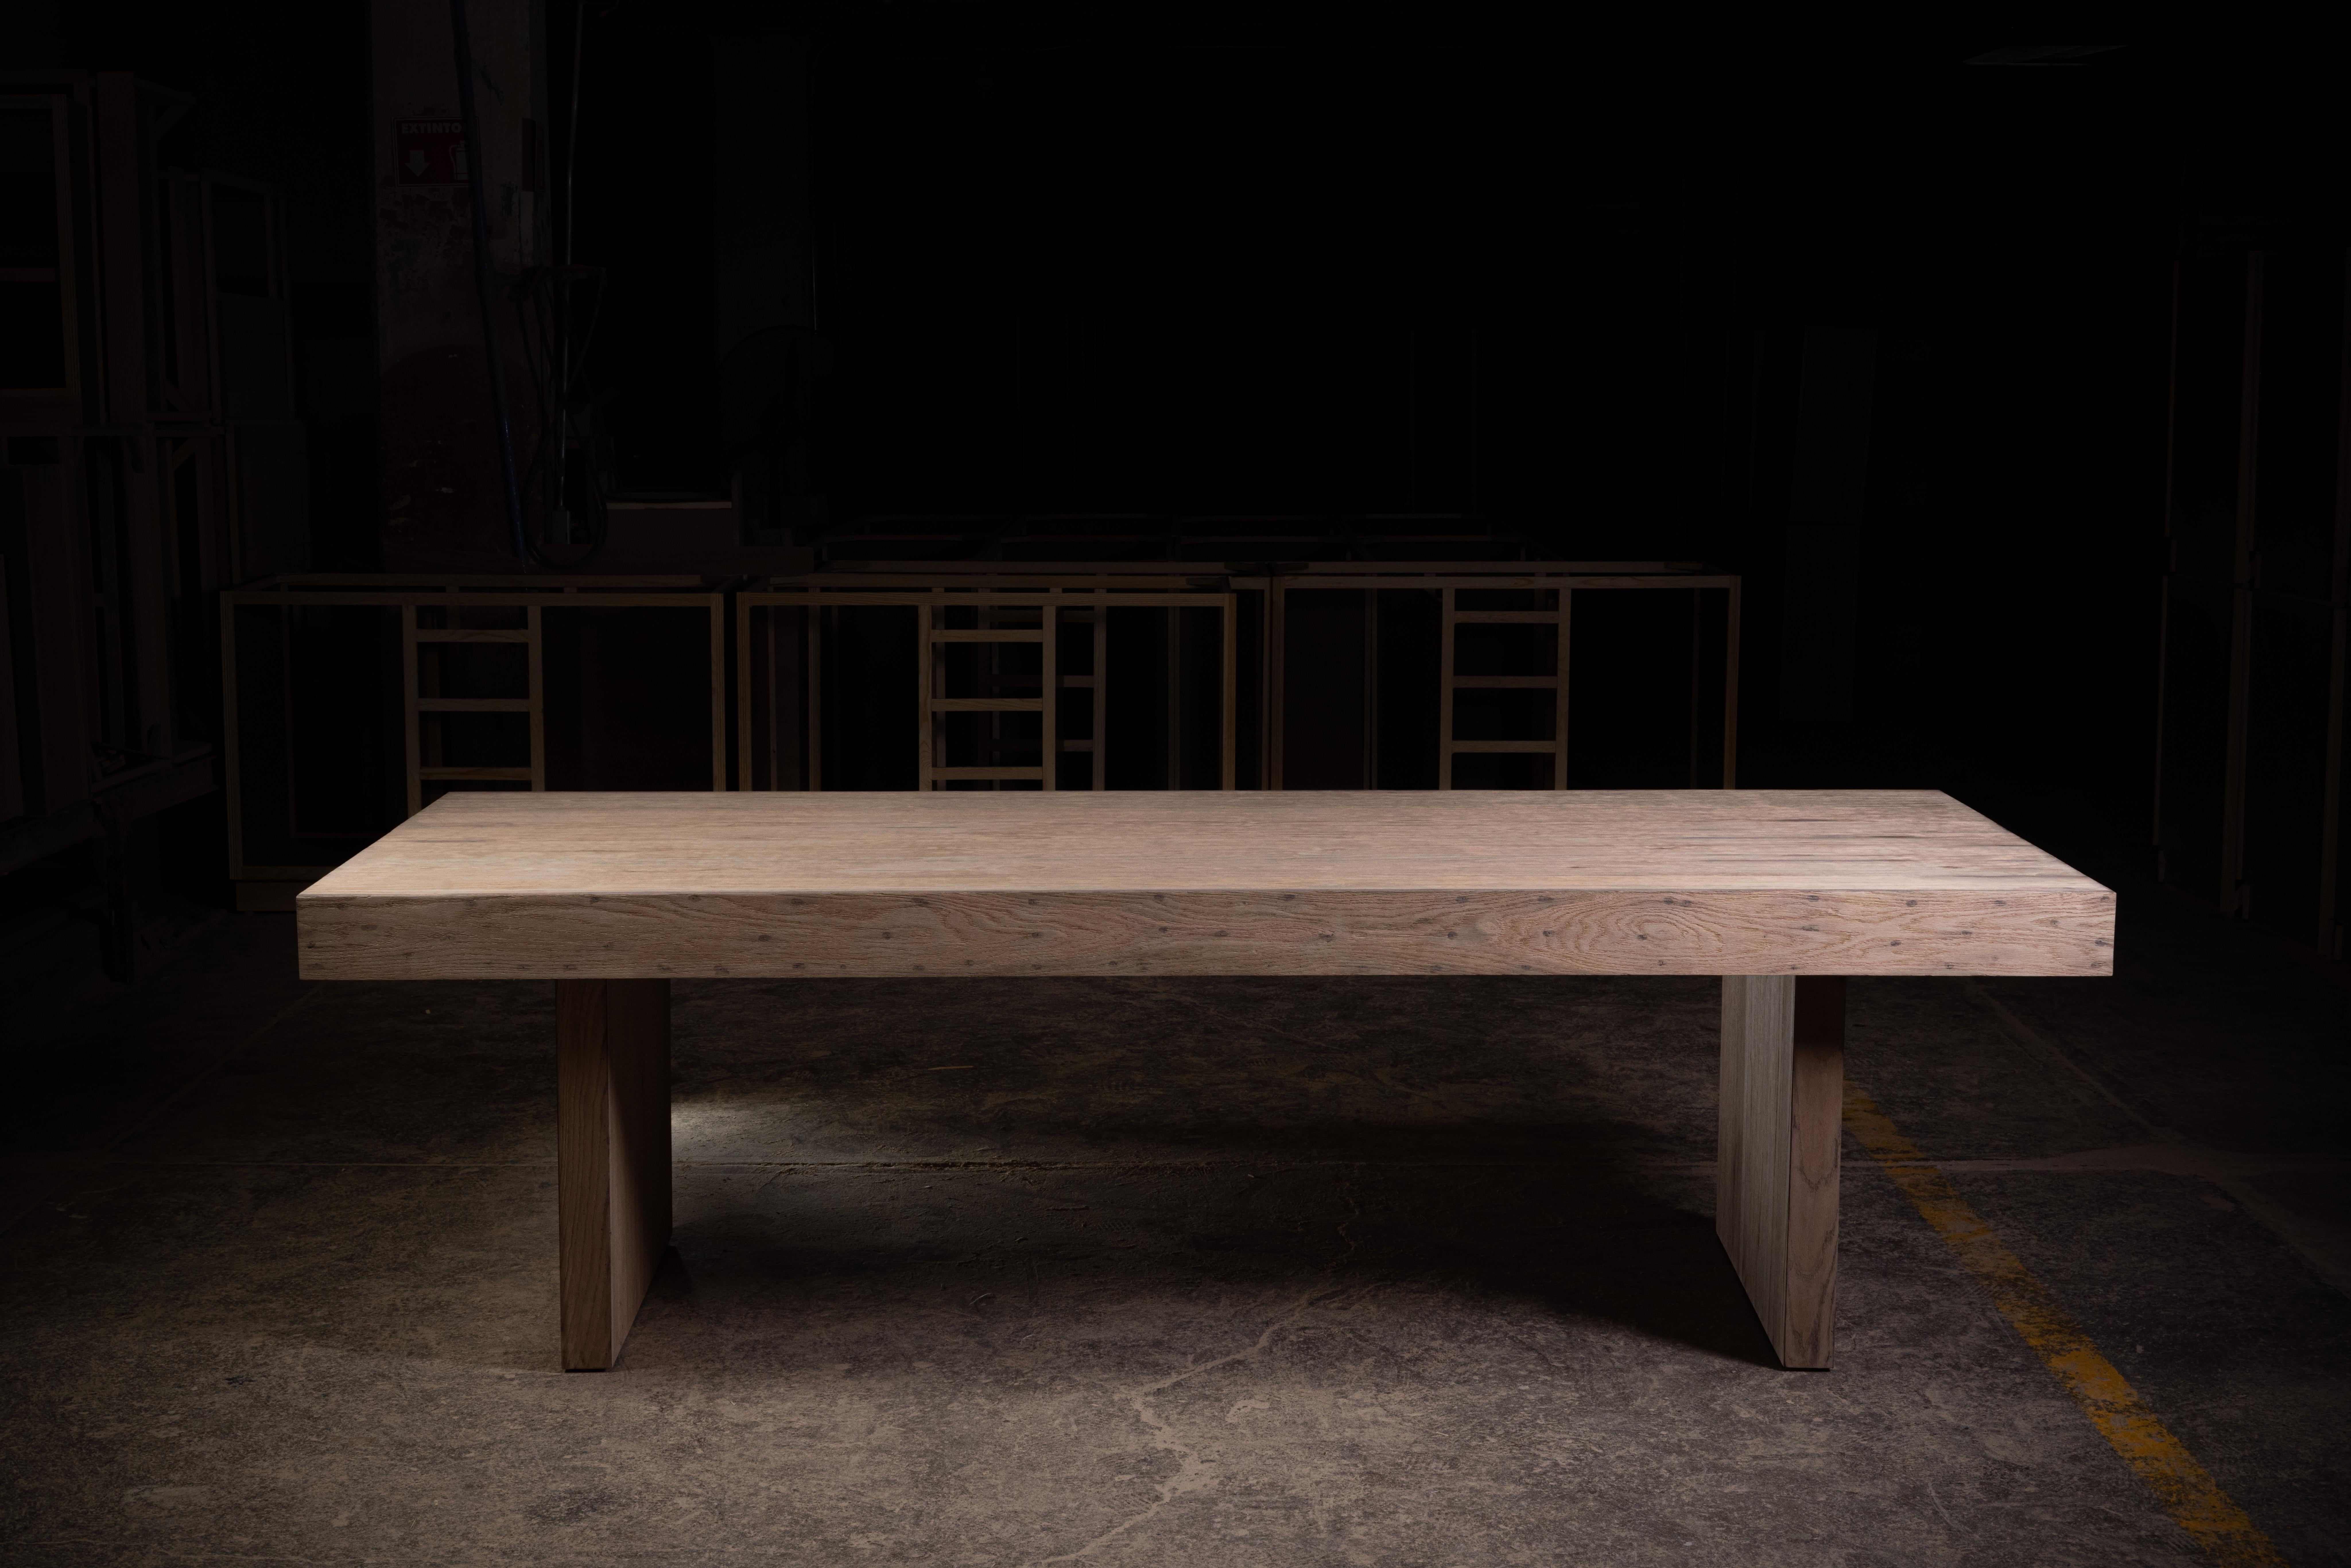 Table de salle à manger en chêne naturel, fabriquée à la main, en bois massif de récupération. 

Le plateau de la table a une épaisseur de 4